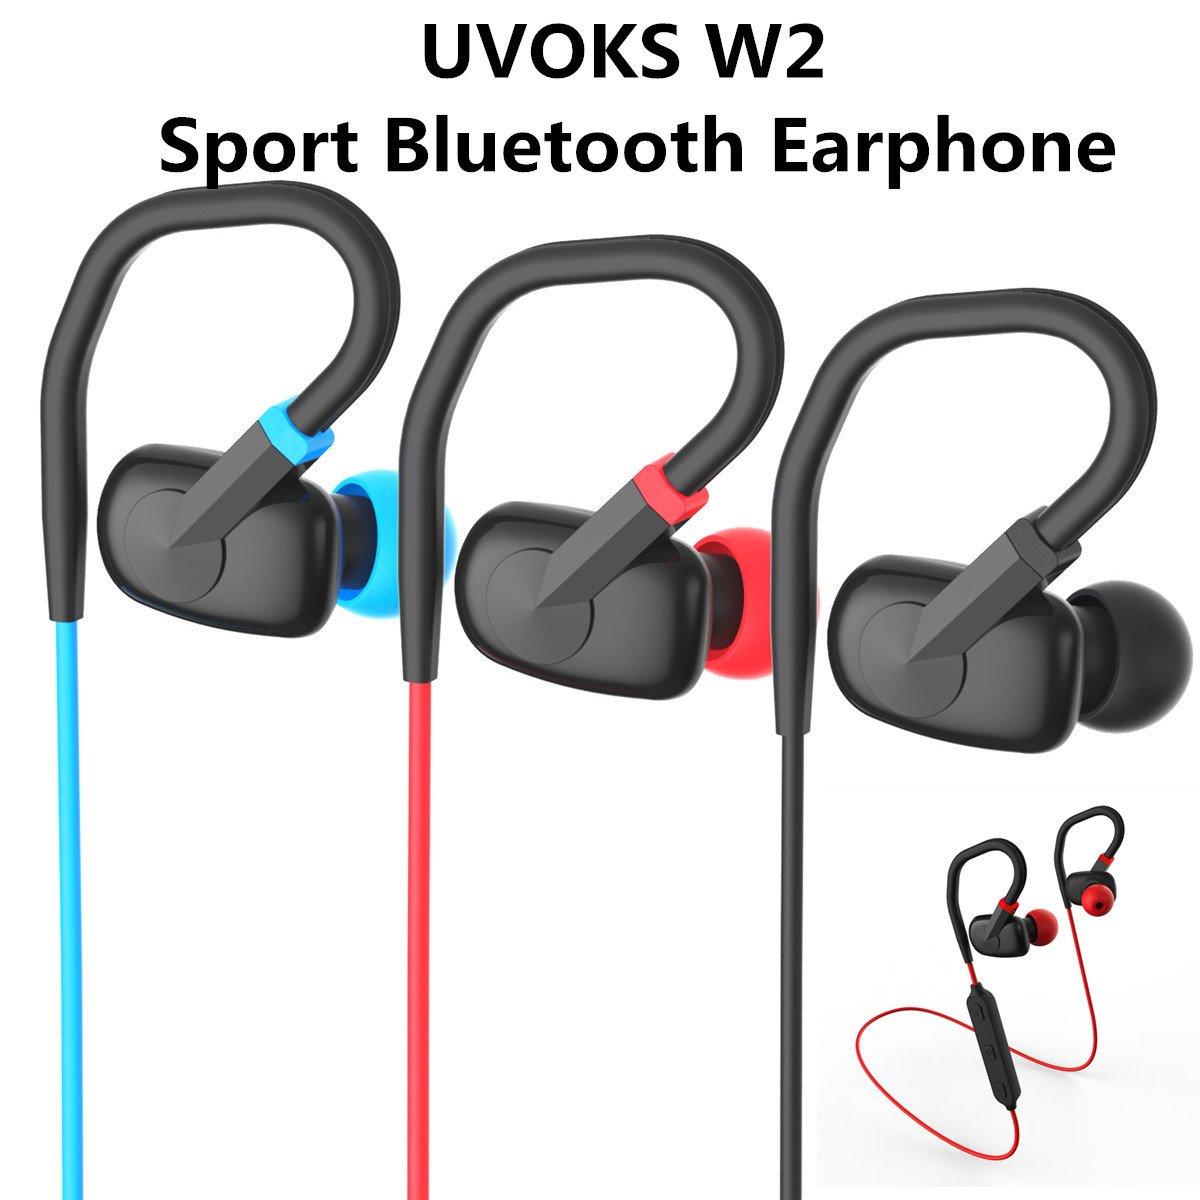 UVOKS W2 Wireless Bluetooth Earphone Waterproof In-ear Stereo Sports Headphone with Mic 10